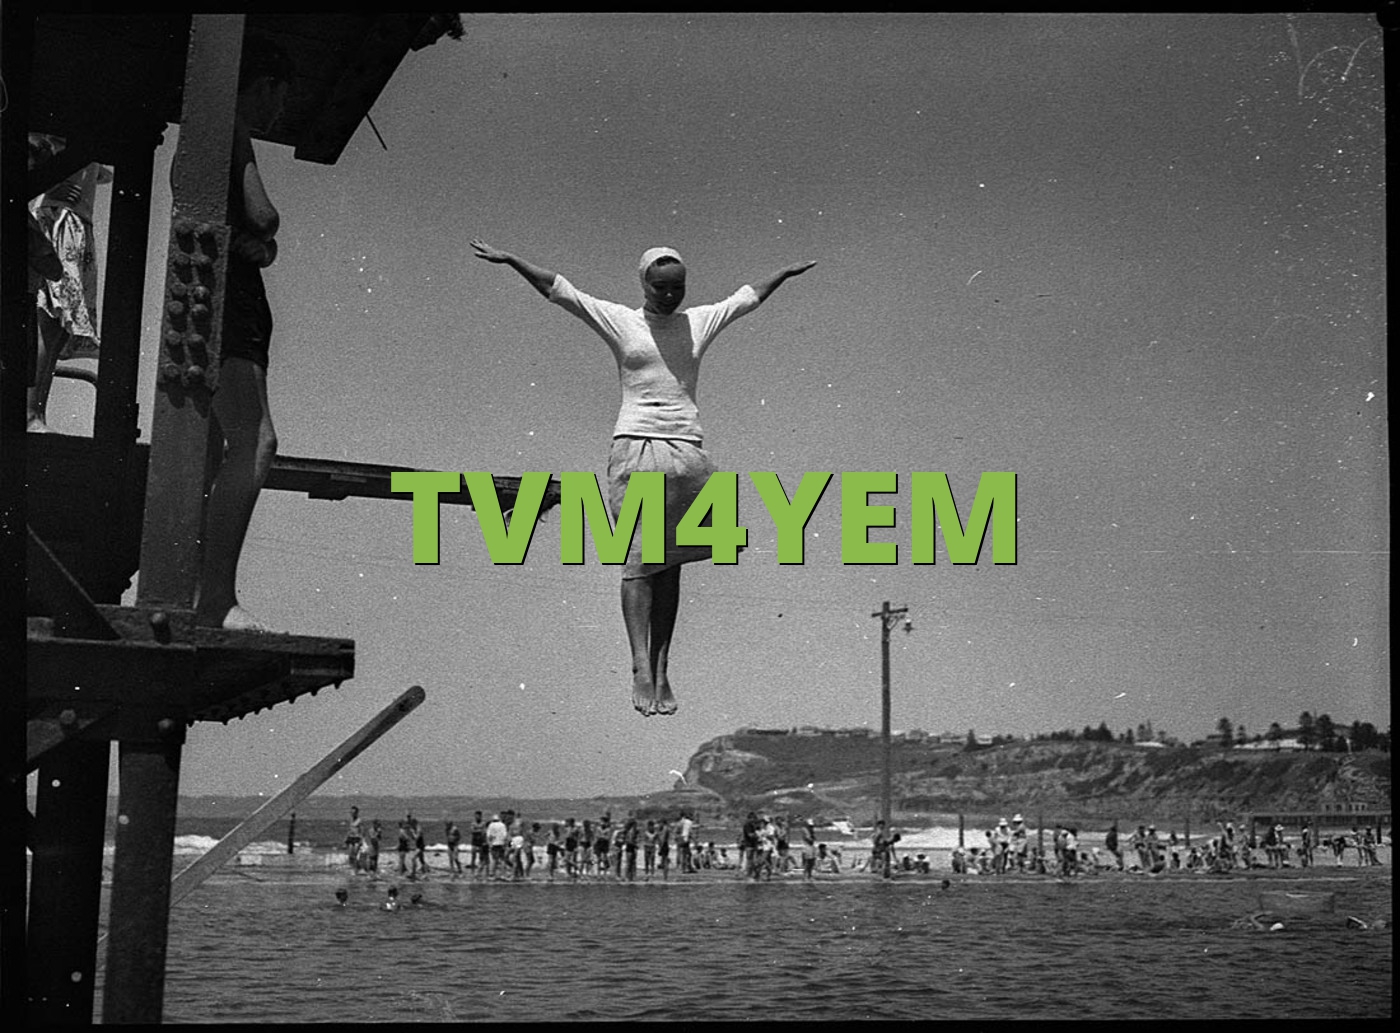 TVM4YEM